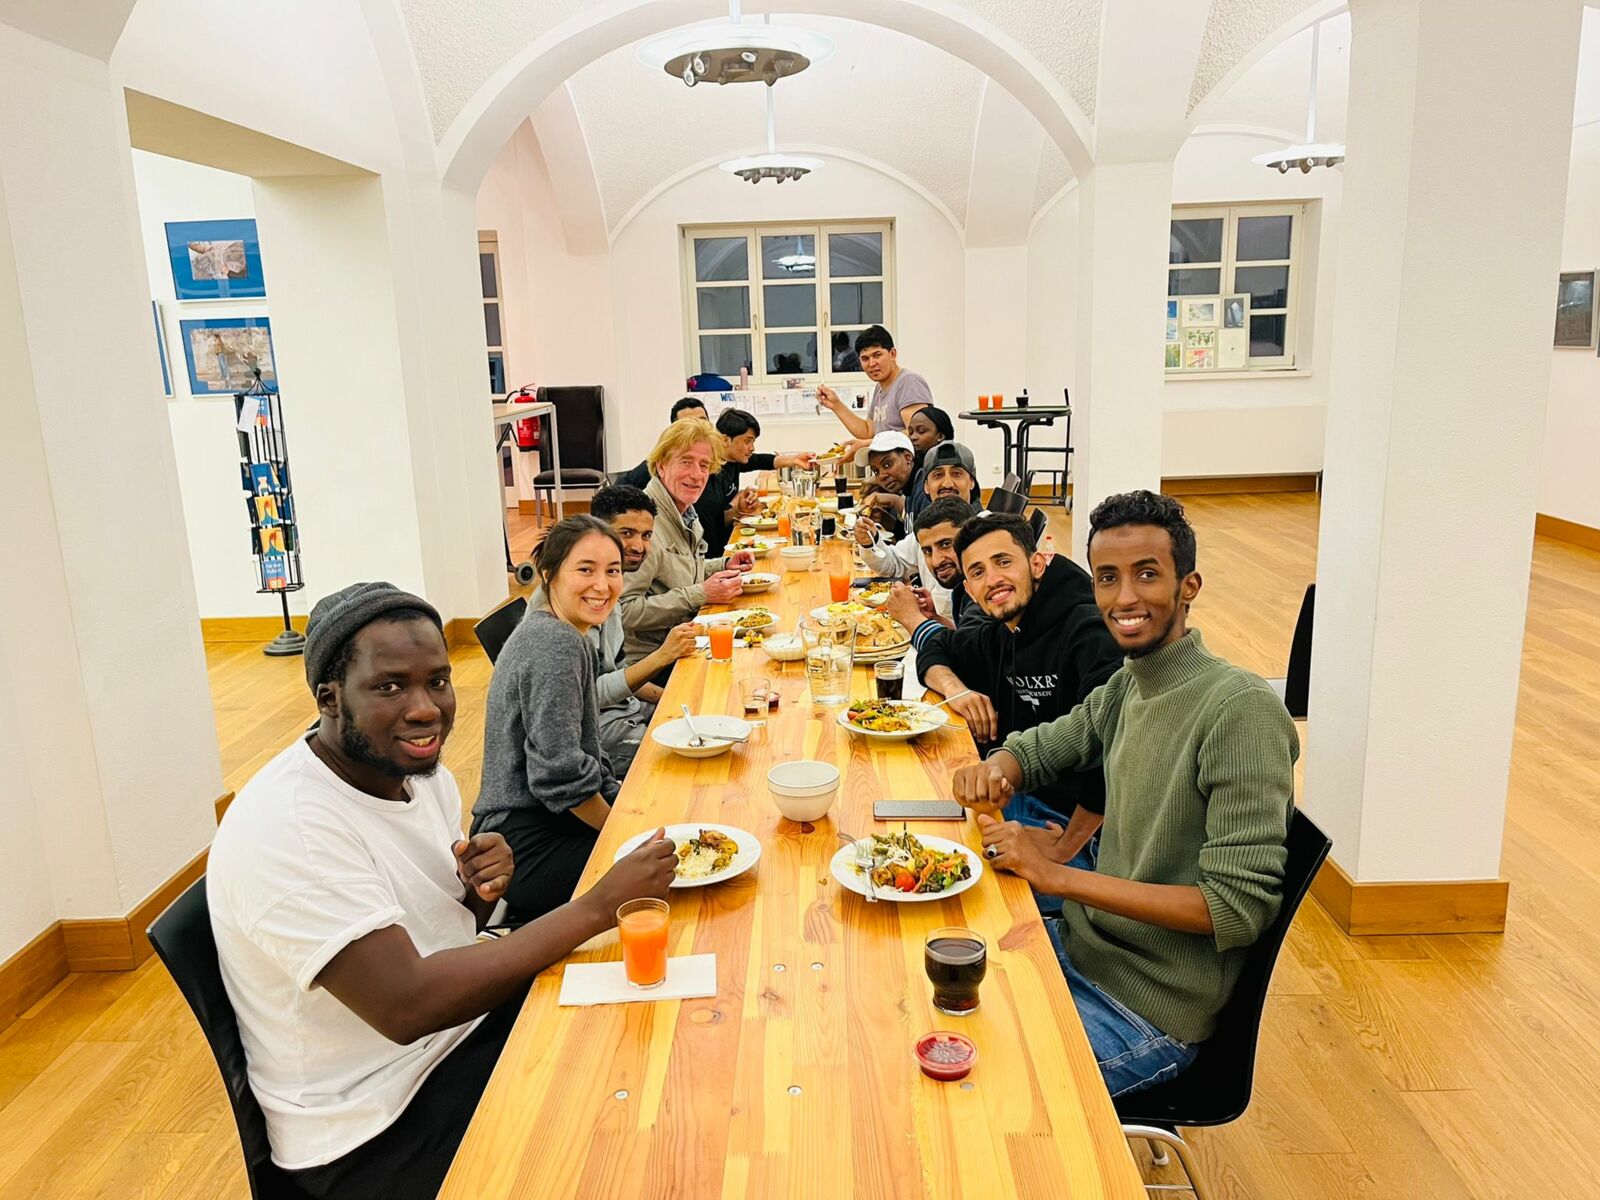 Hier sieht man ein Gruppenfoto von Menschen, die an einem langen Tisch mit Essen und Trinken sitzen und in die Kamera lachen.